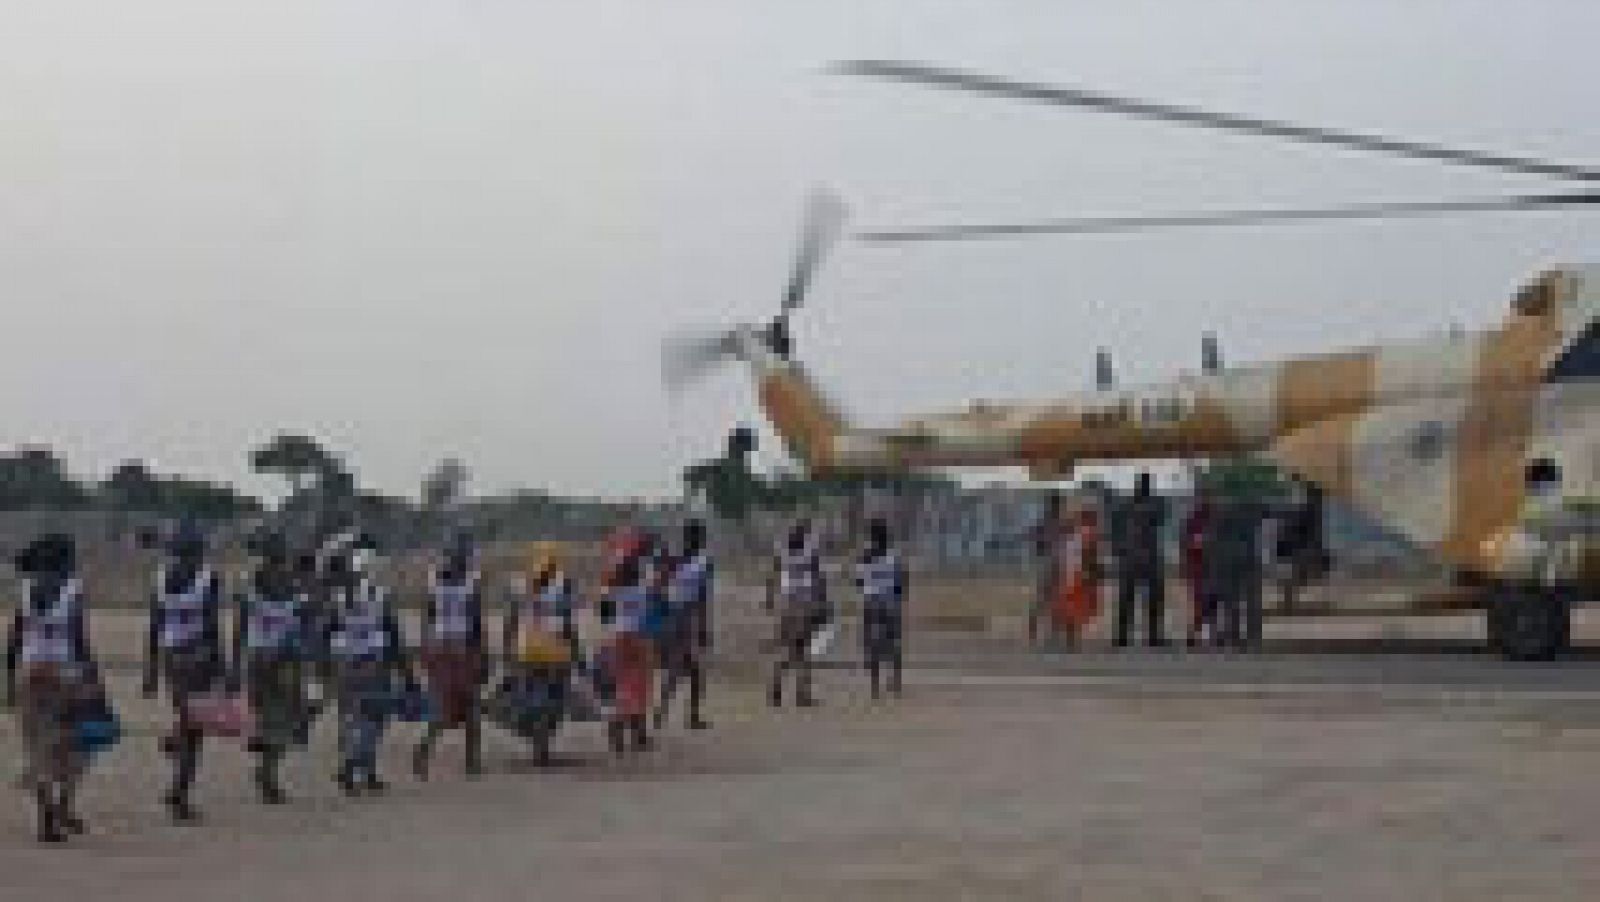 El gobierno de Nigeria ha confirmado la liberación de 82 niñas